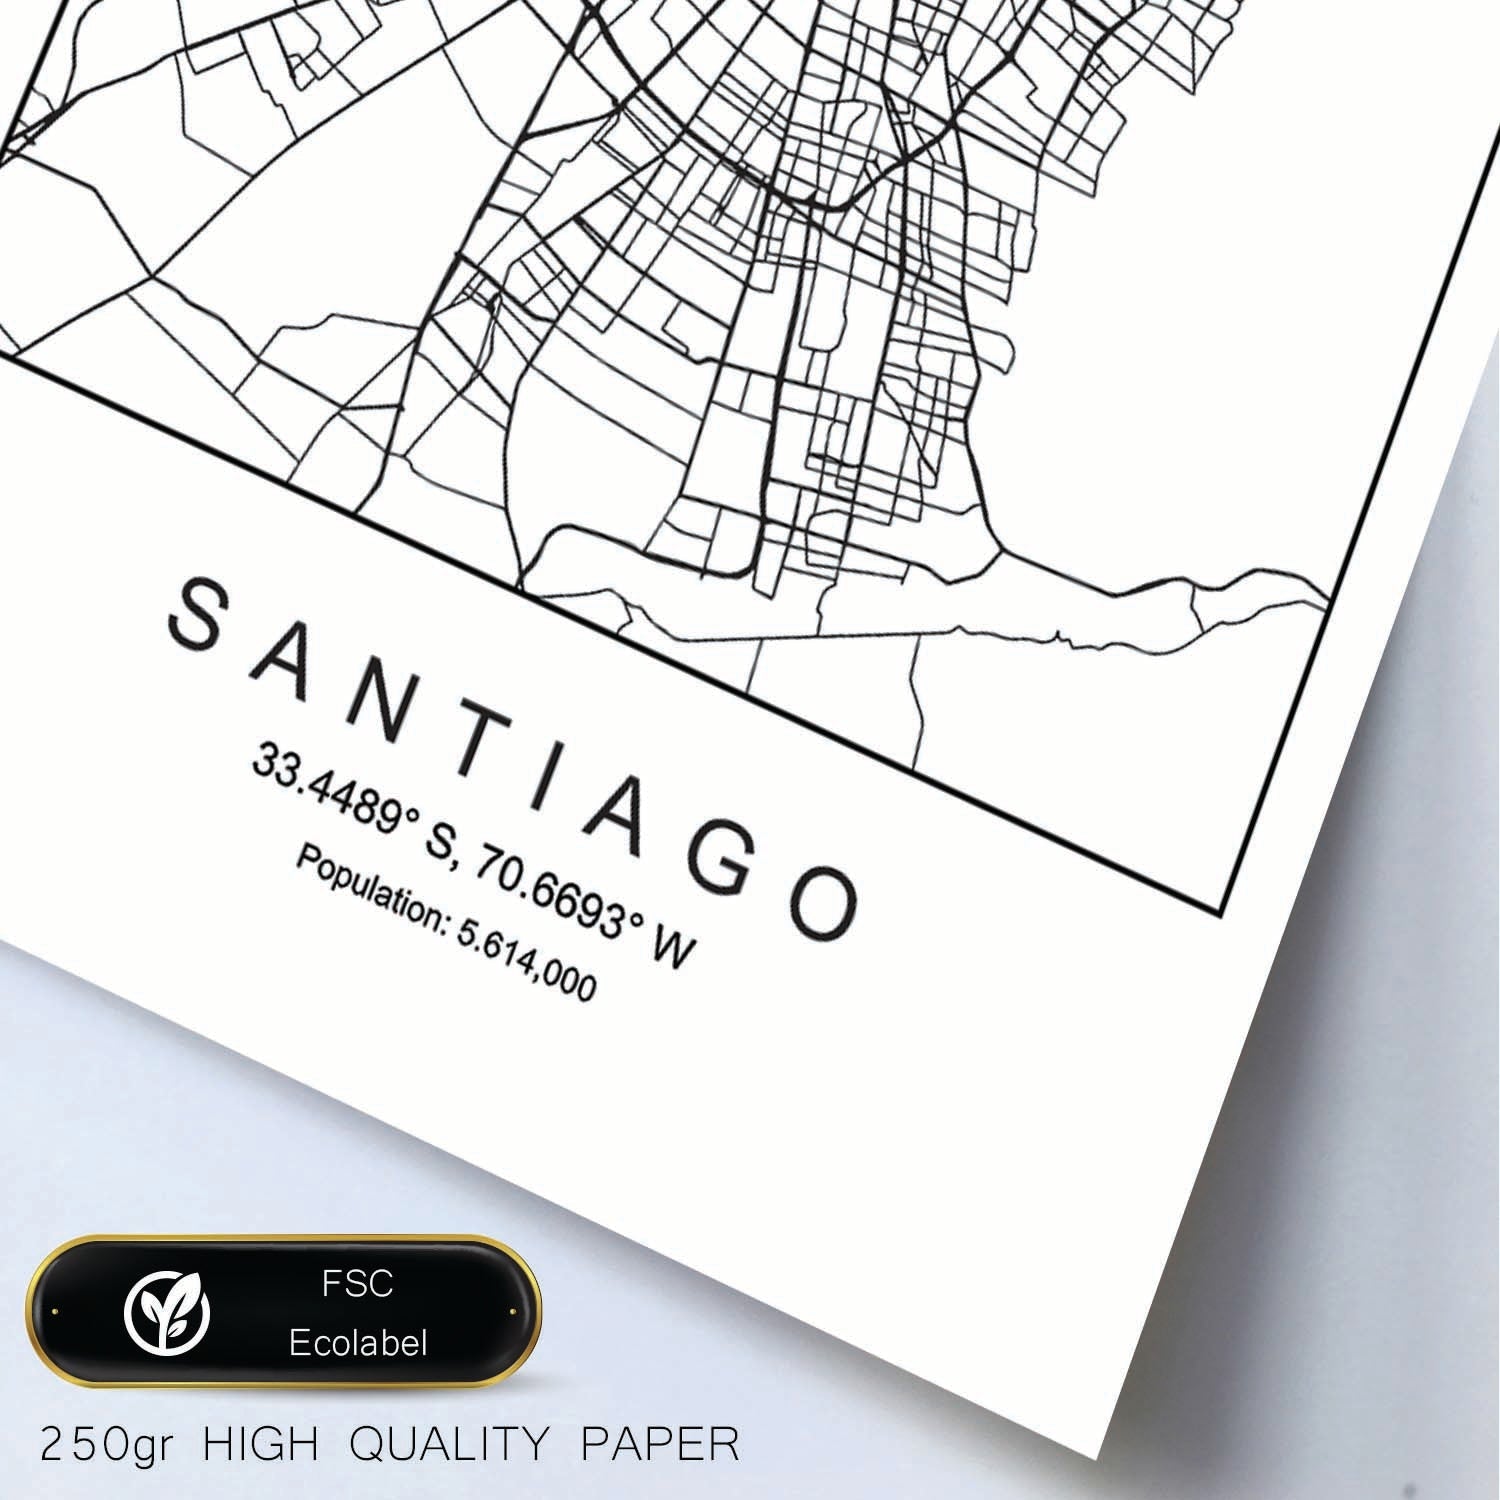 Lámina mapa de la ciudad Santiago estilo nordico en blanco y negro.-Artwork-Nacnic-Nacnic Estudio SL